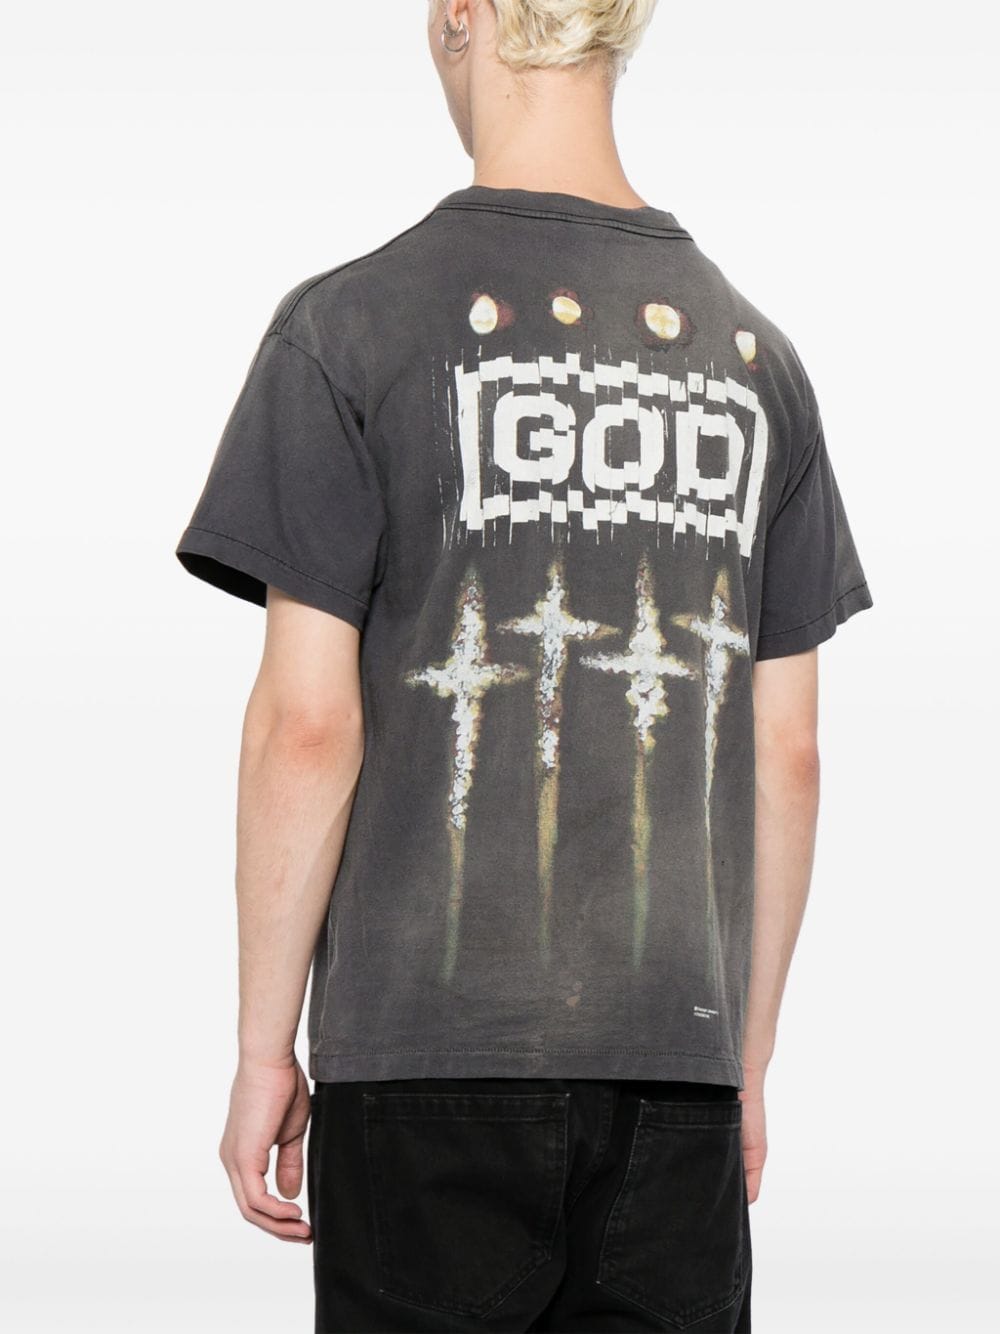 SAINT MXXXXXX God Tシャツ - Farfetch